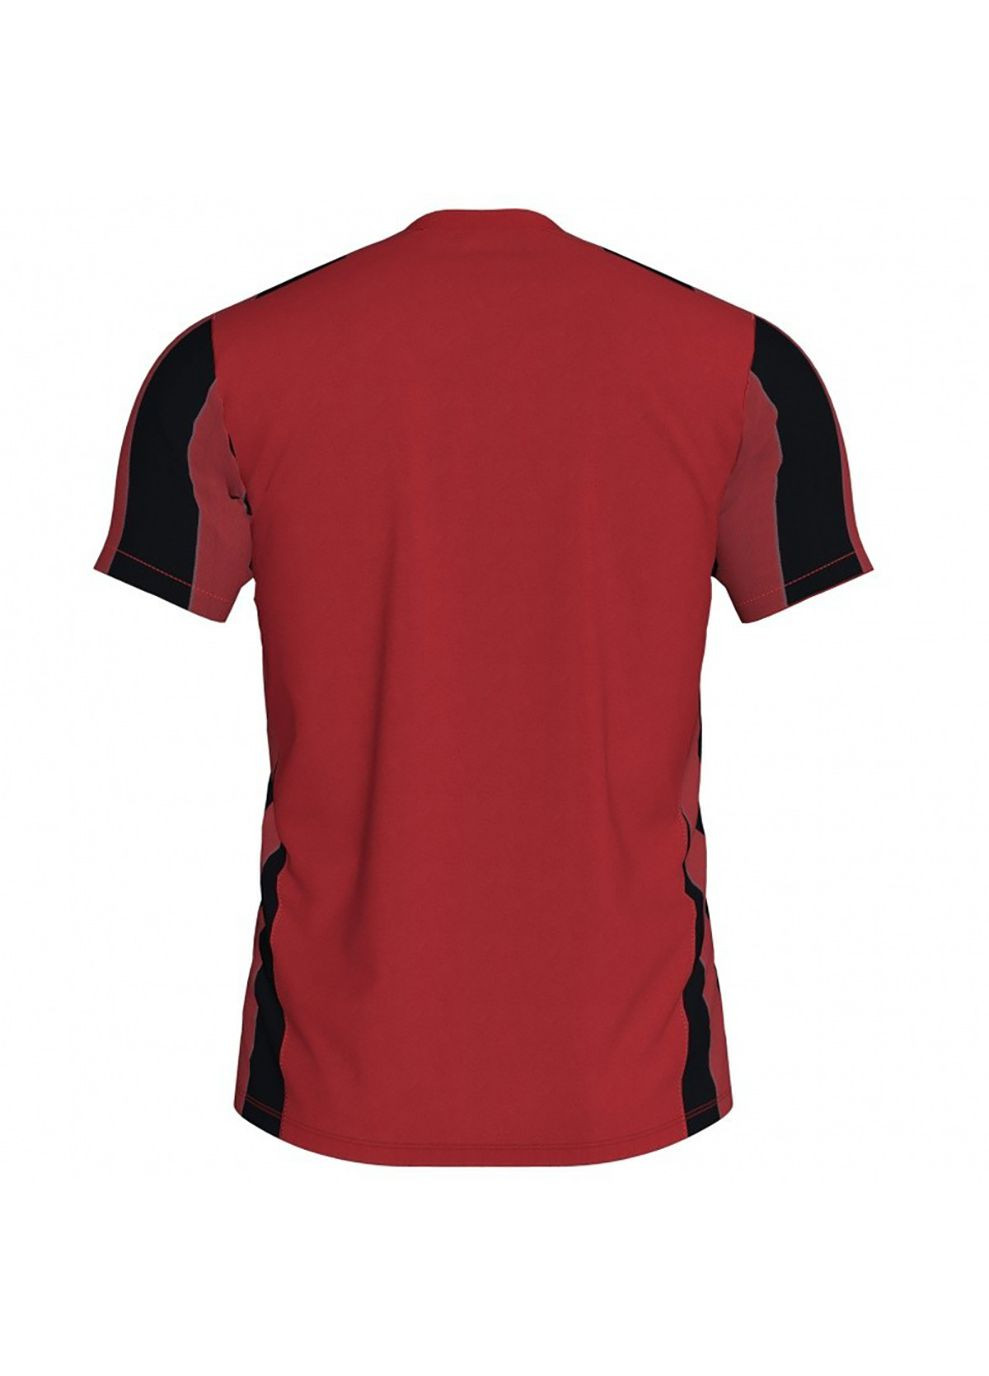 Комбінована футболка inter t-shirt red-black s/s червоний,чорний 101287.601 Joma